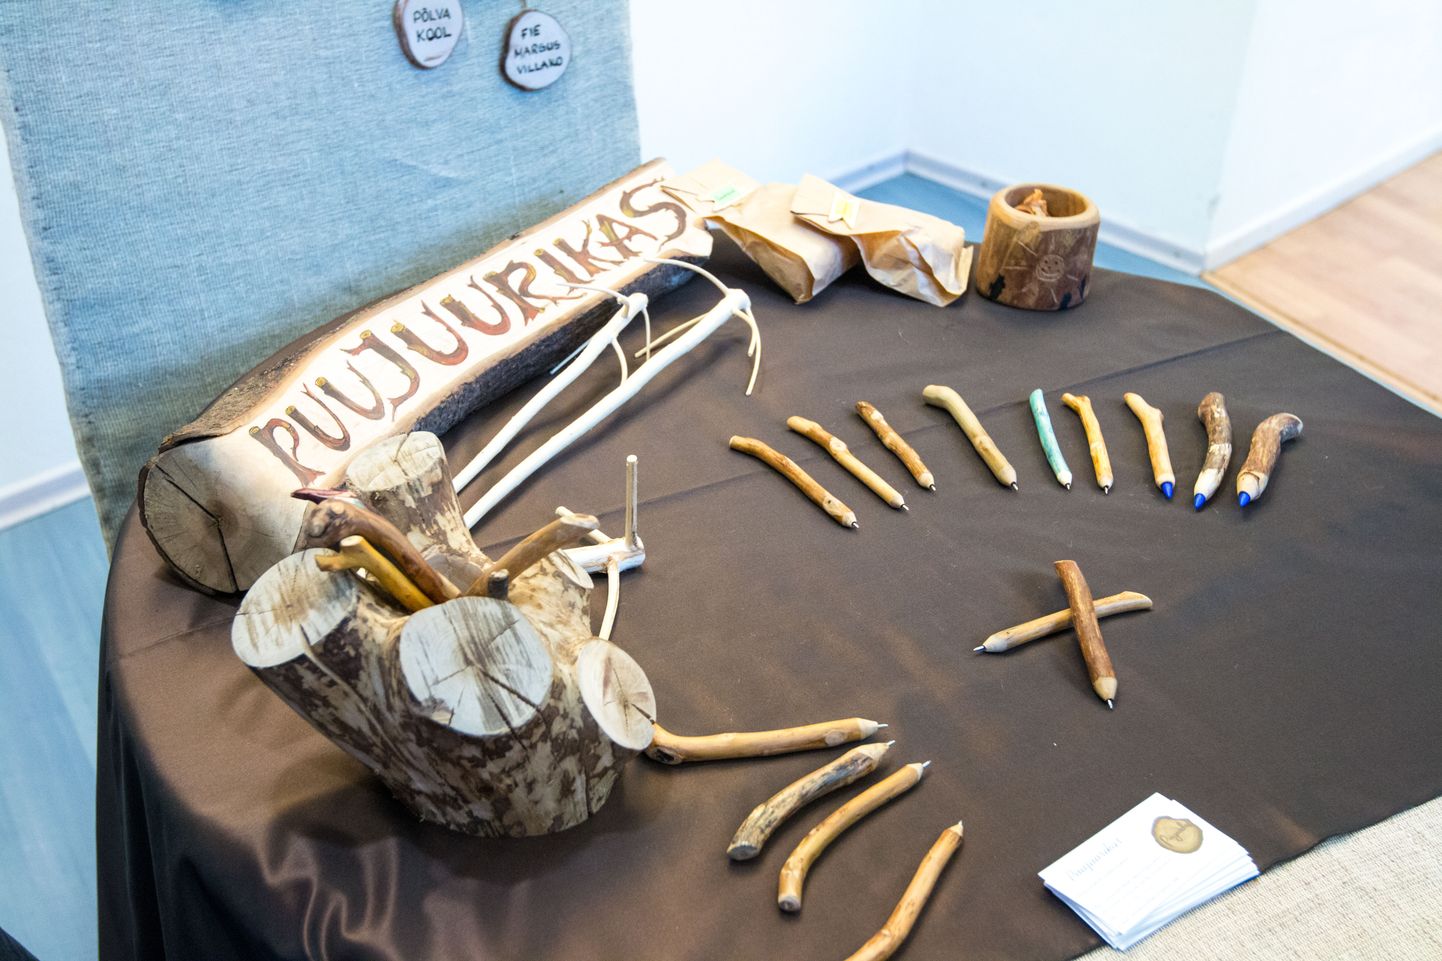 Varem on parimaks nooreks välgatajaks valitud minifirma Puujuurikas, kes esitas idee kasutada puidust jäägid ära efektiivselt, meisterdades neist pastapliiatseid.